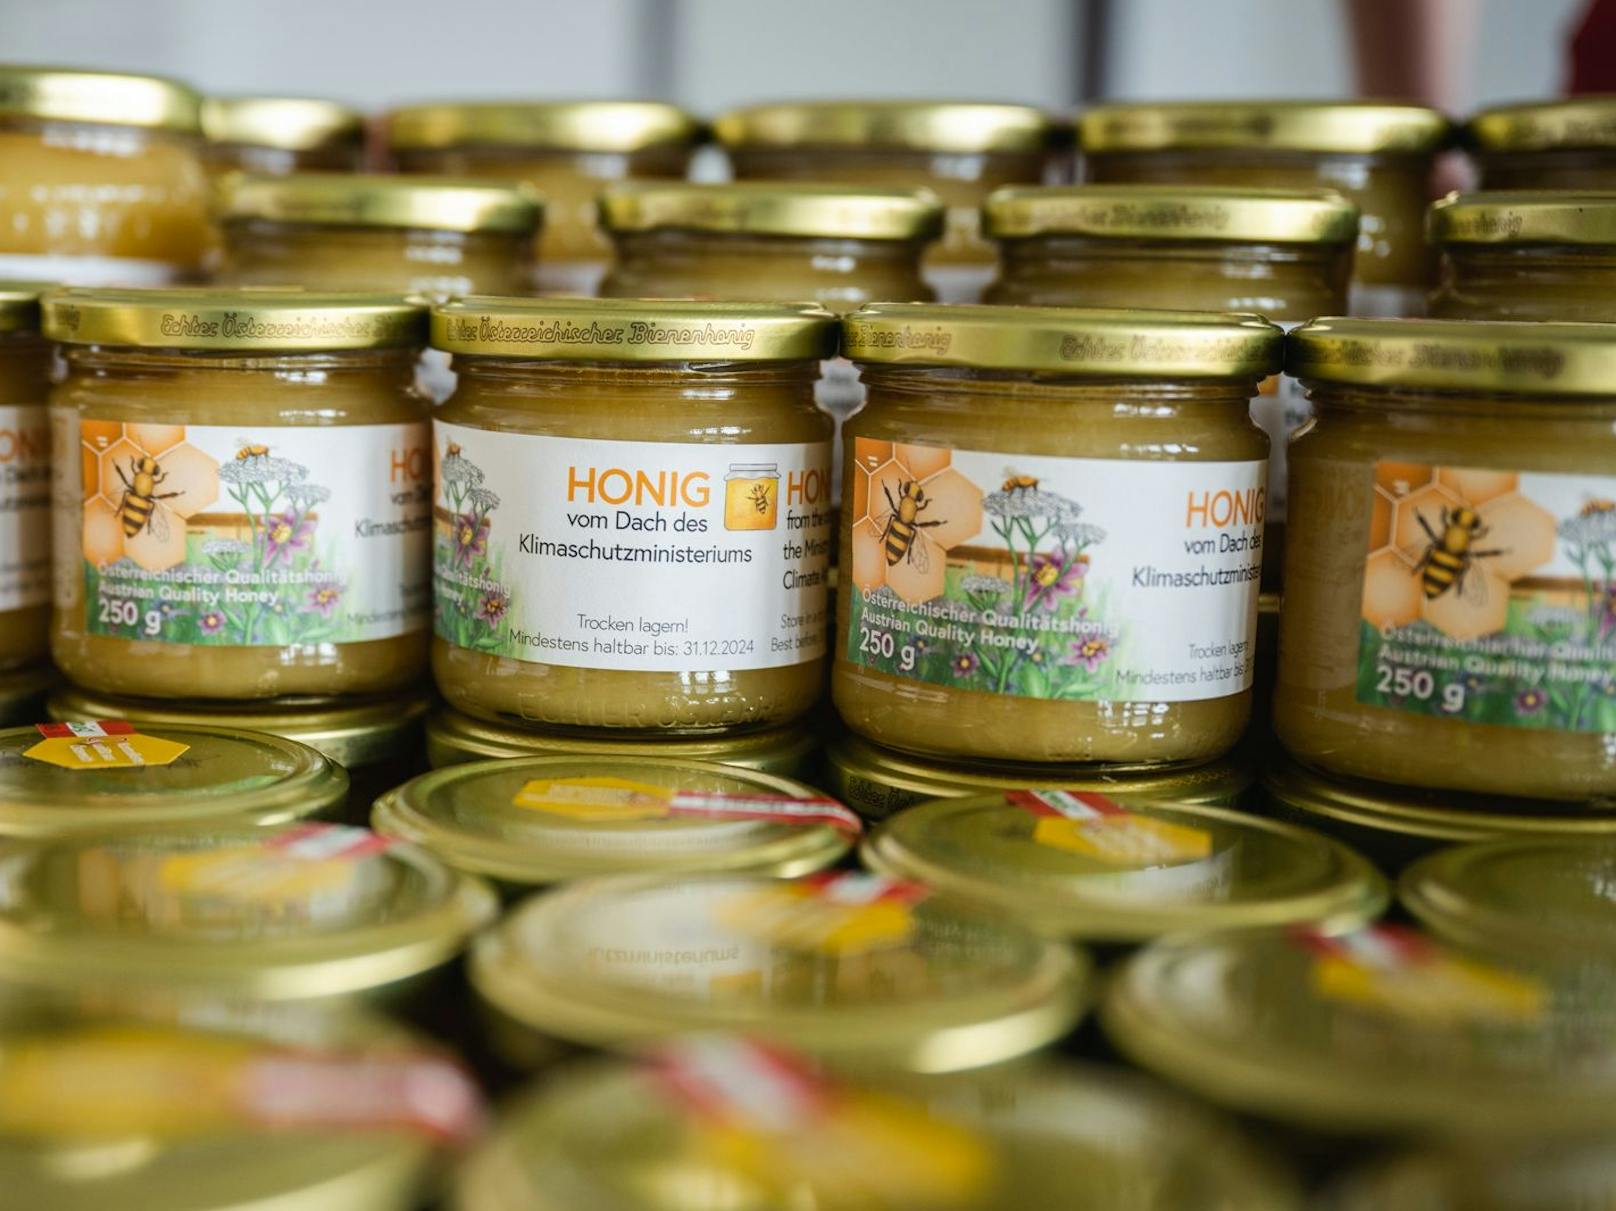 2022 ist nun die erste Honigernte da. 25 Kilogramm Honig haben die fleißigen Bienen produziert und wurden sogar mit dem österreichischen Honig-Gütesiegel in der Kategorie "Gold" ausgezeichnet.